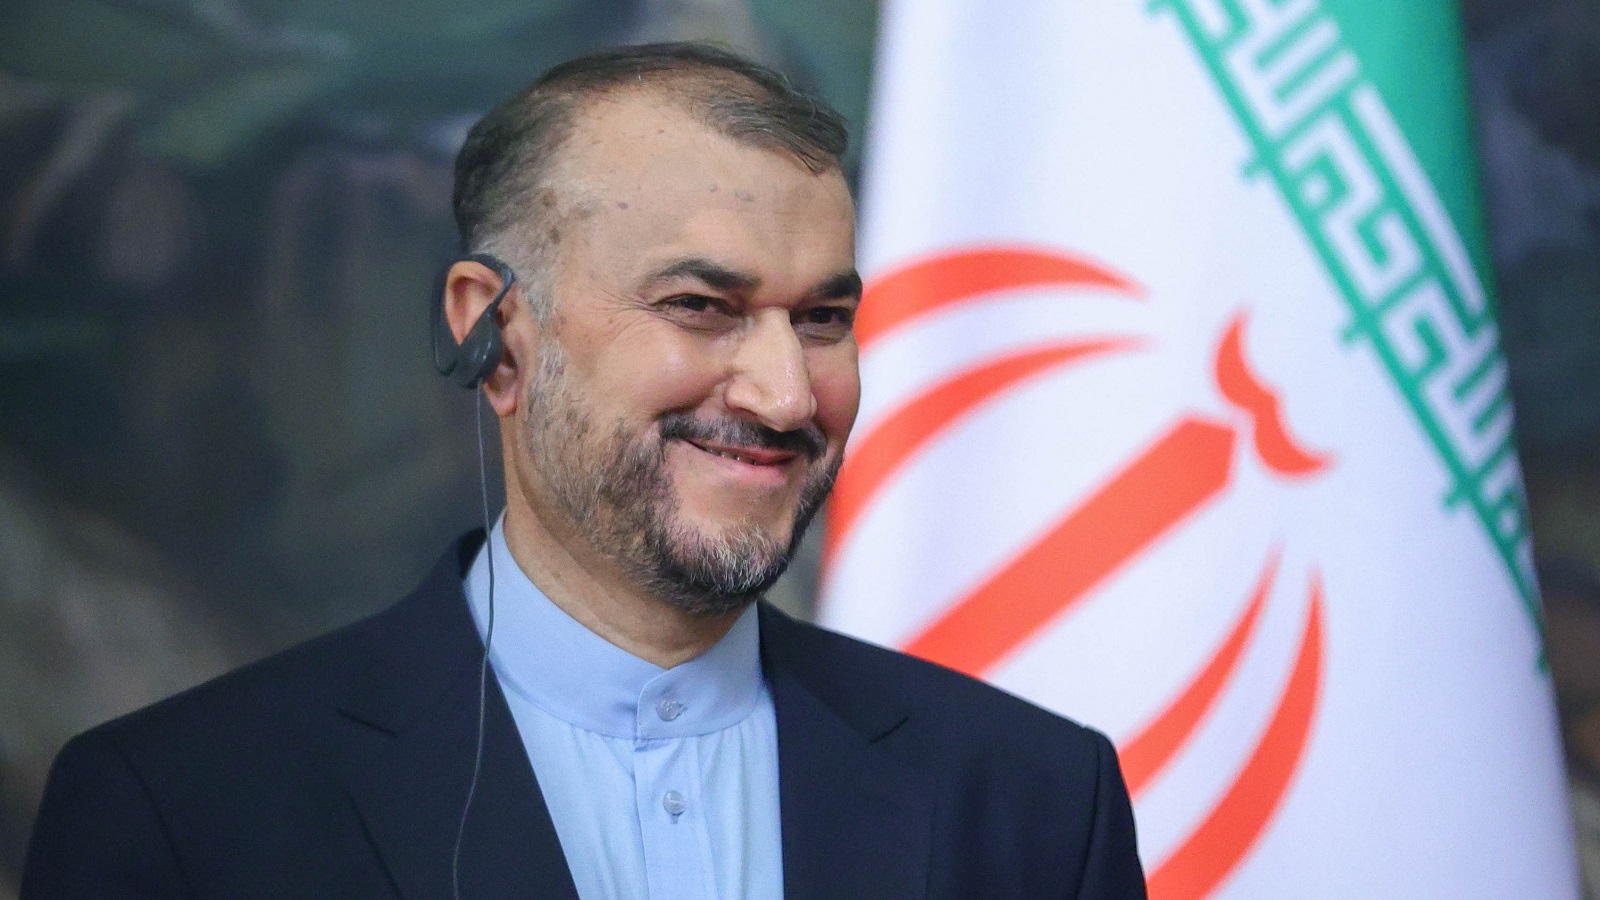 عبد اللهيان ببيروت: "سياسة جديدة" لحضور إيراني منفتح؟